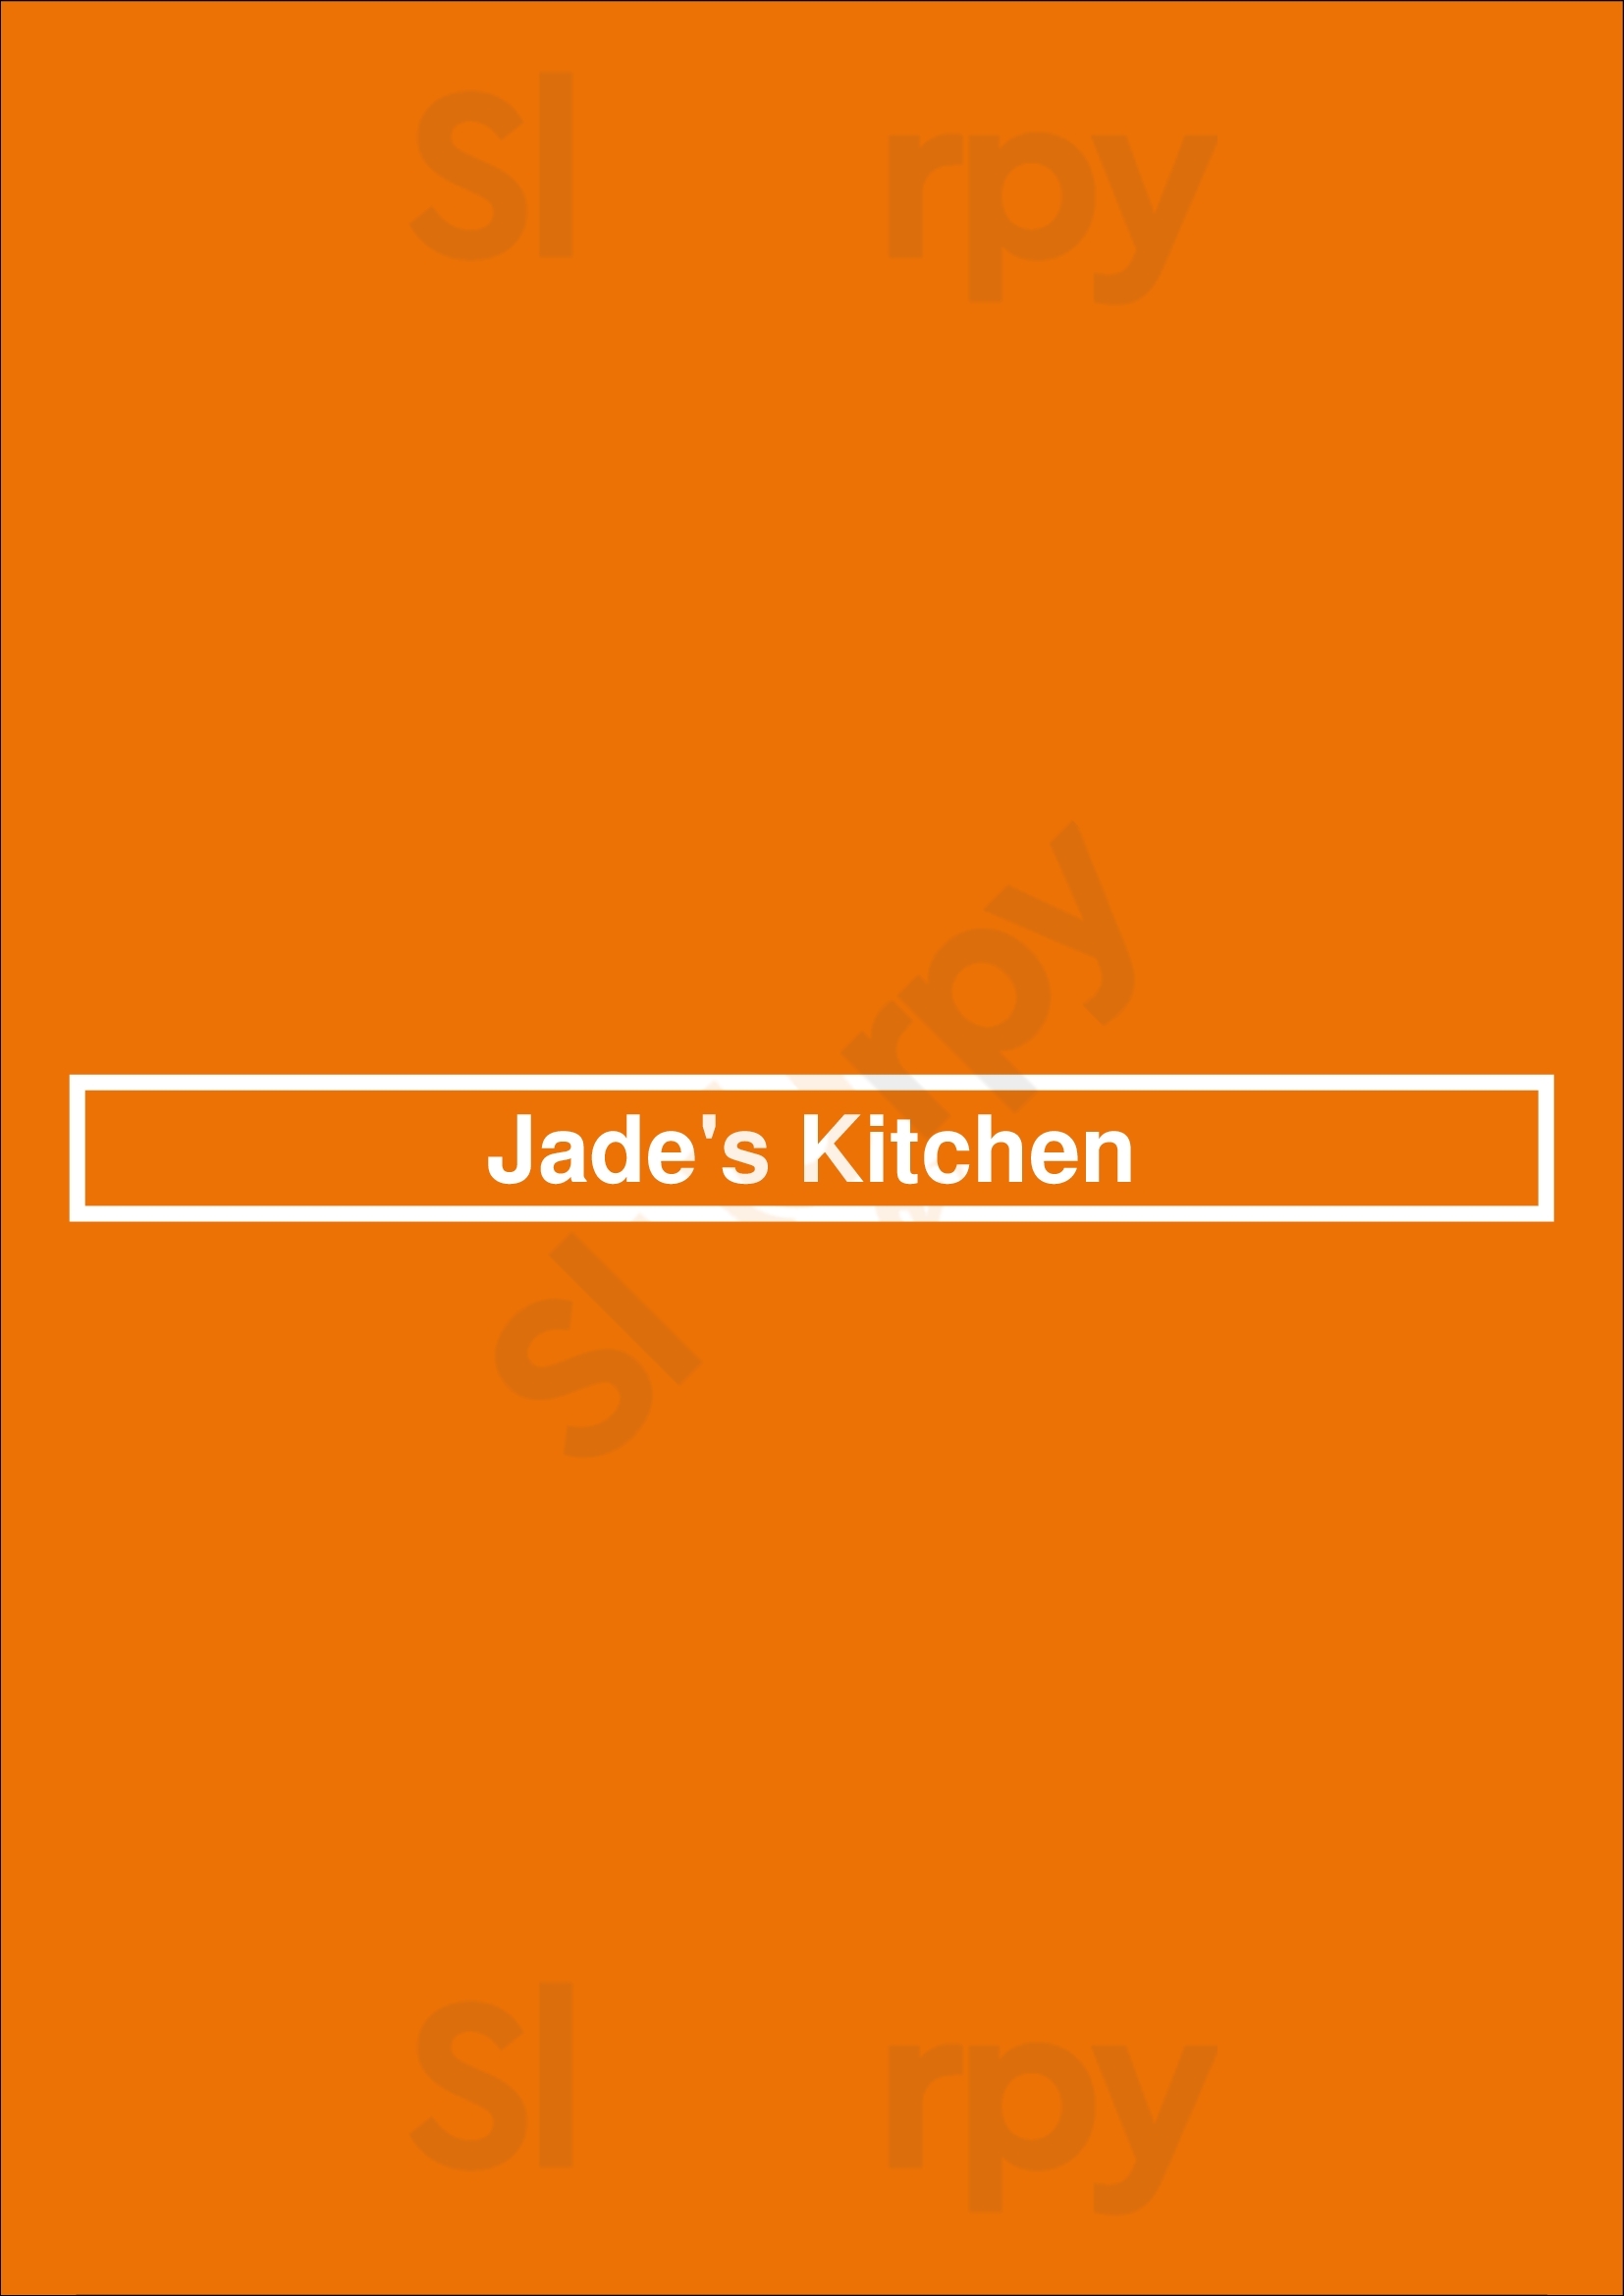 Jade's Kitchen Chesterfield Menu - 1